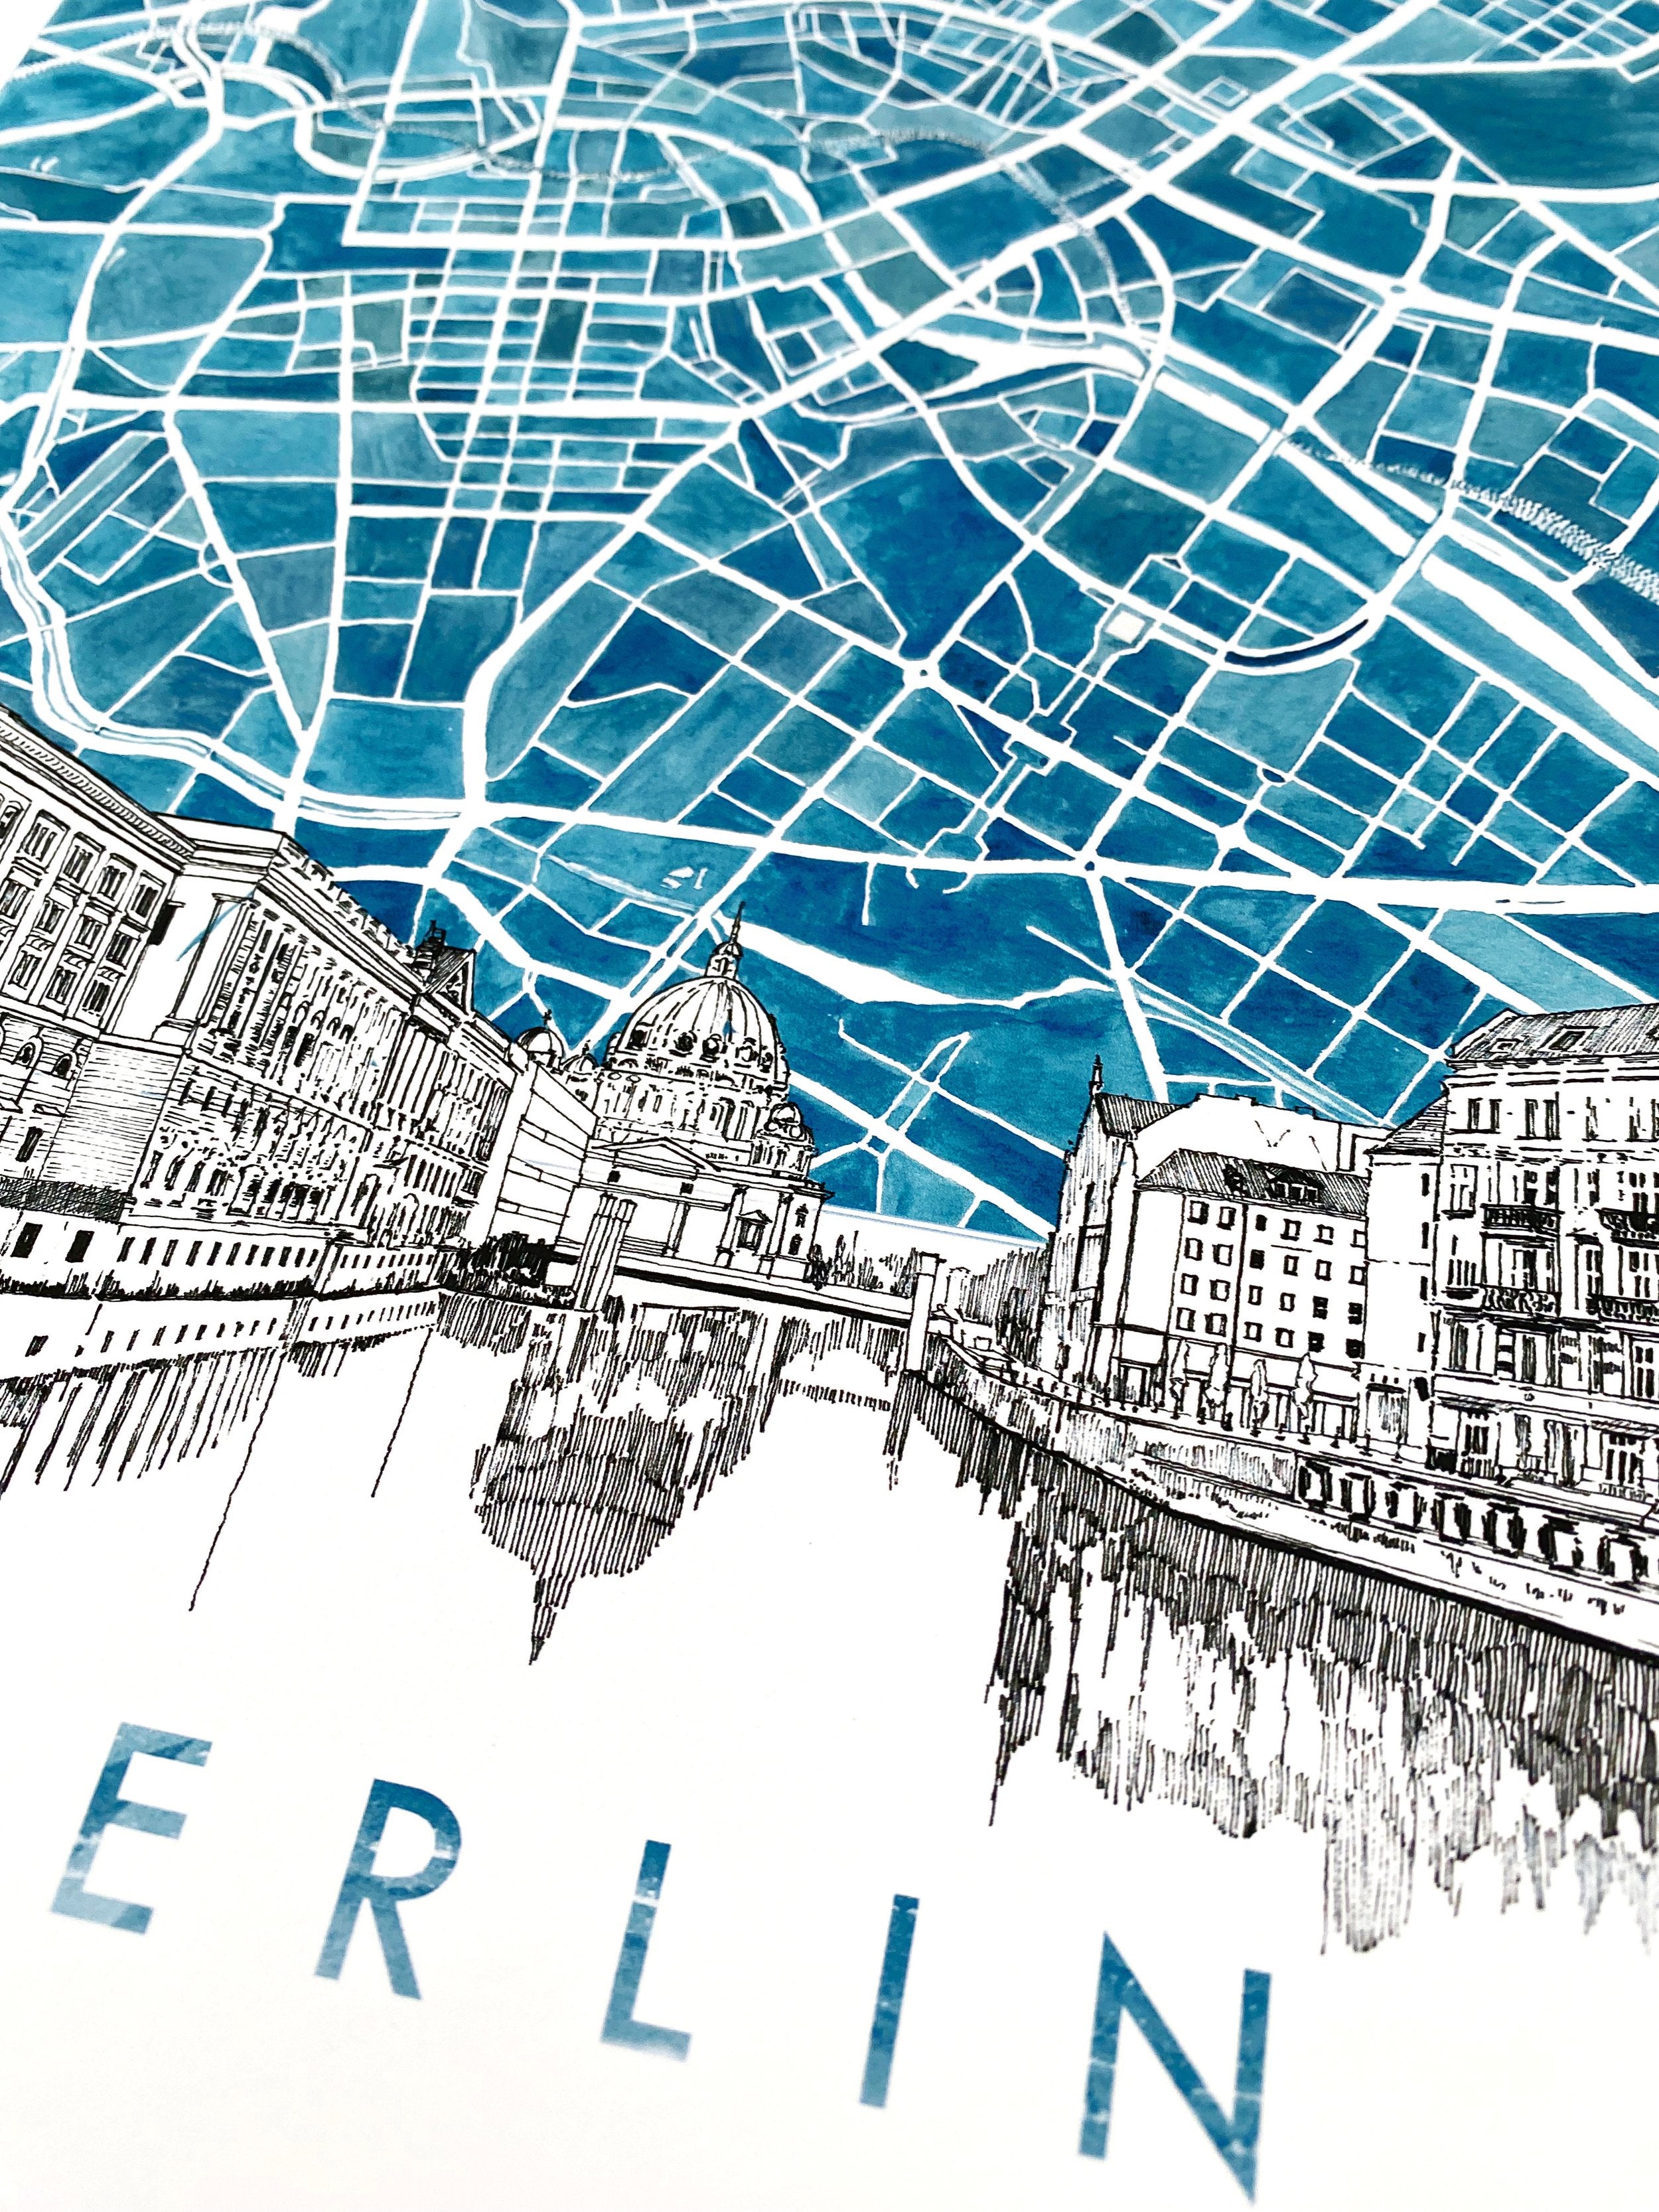 BERLIN Watercolor Map + Sketch: PRINT